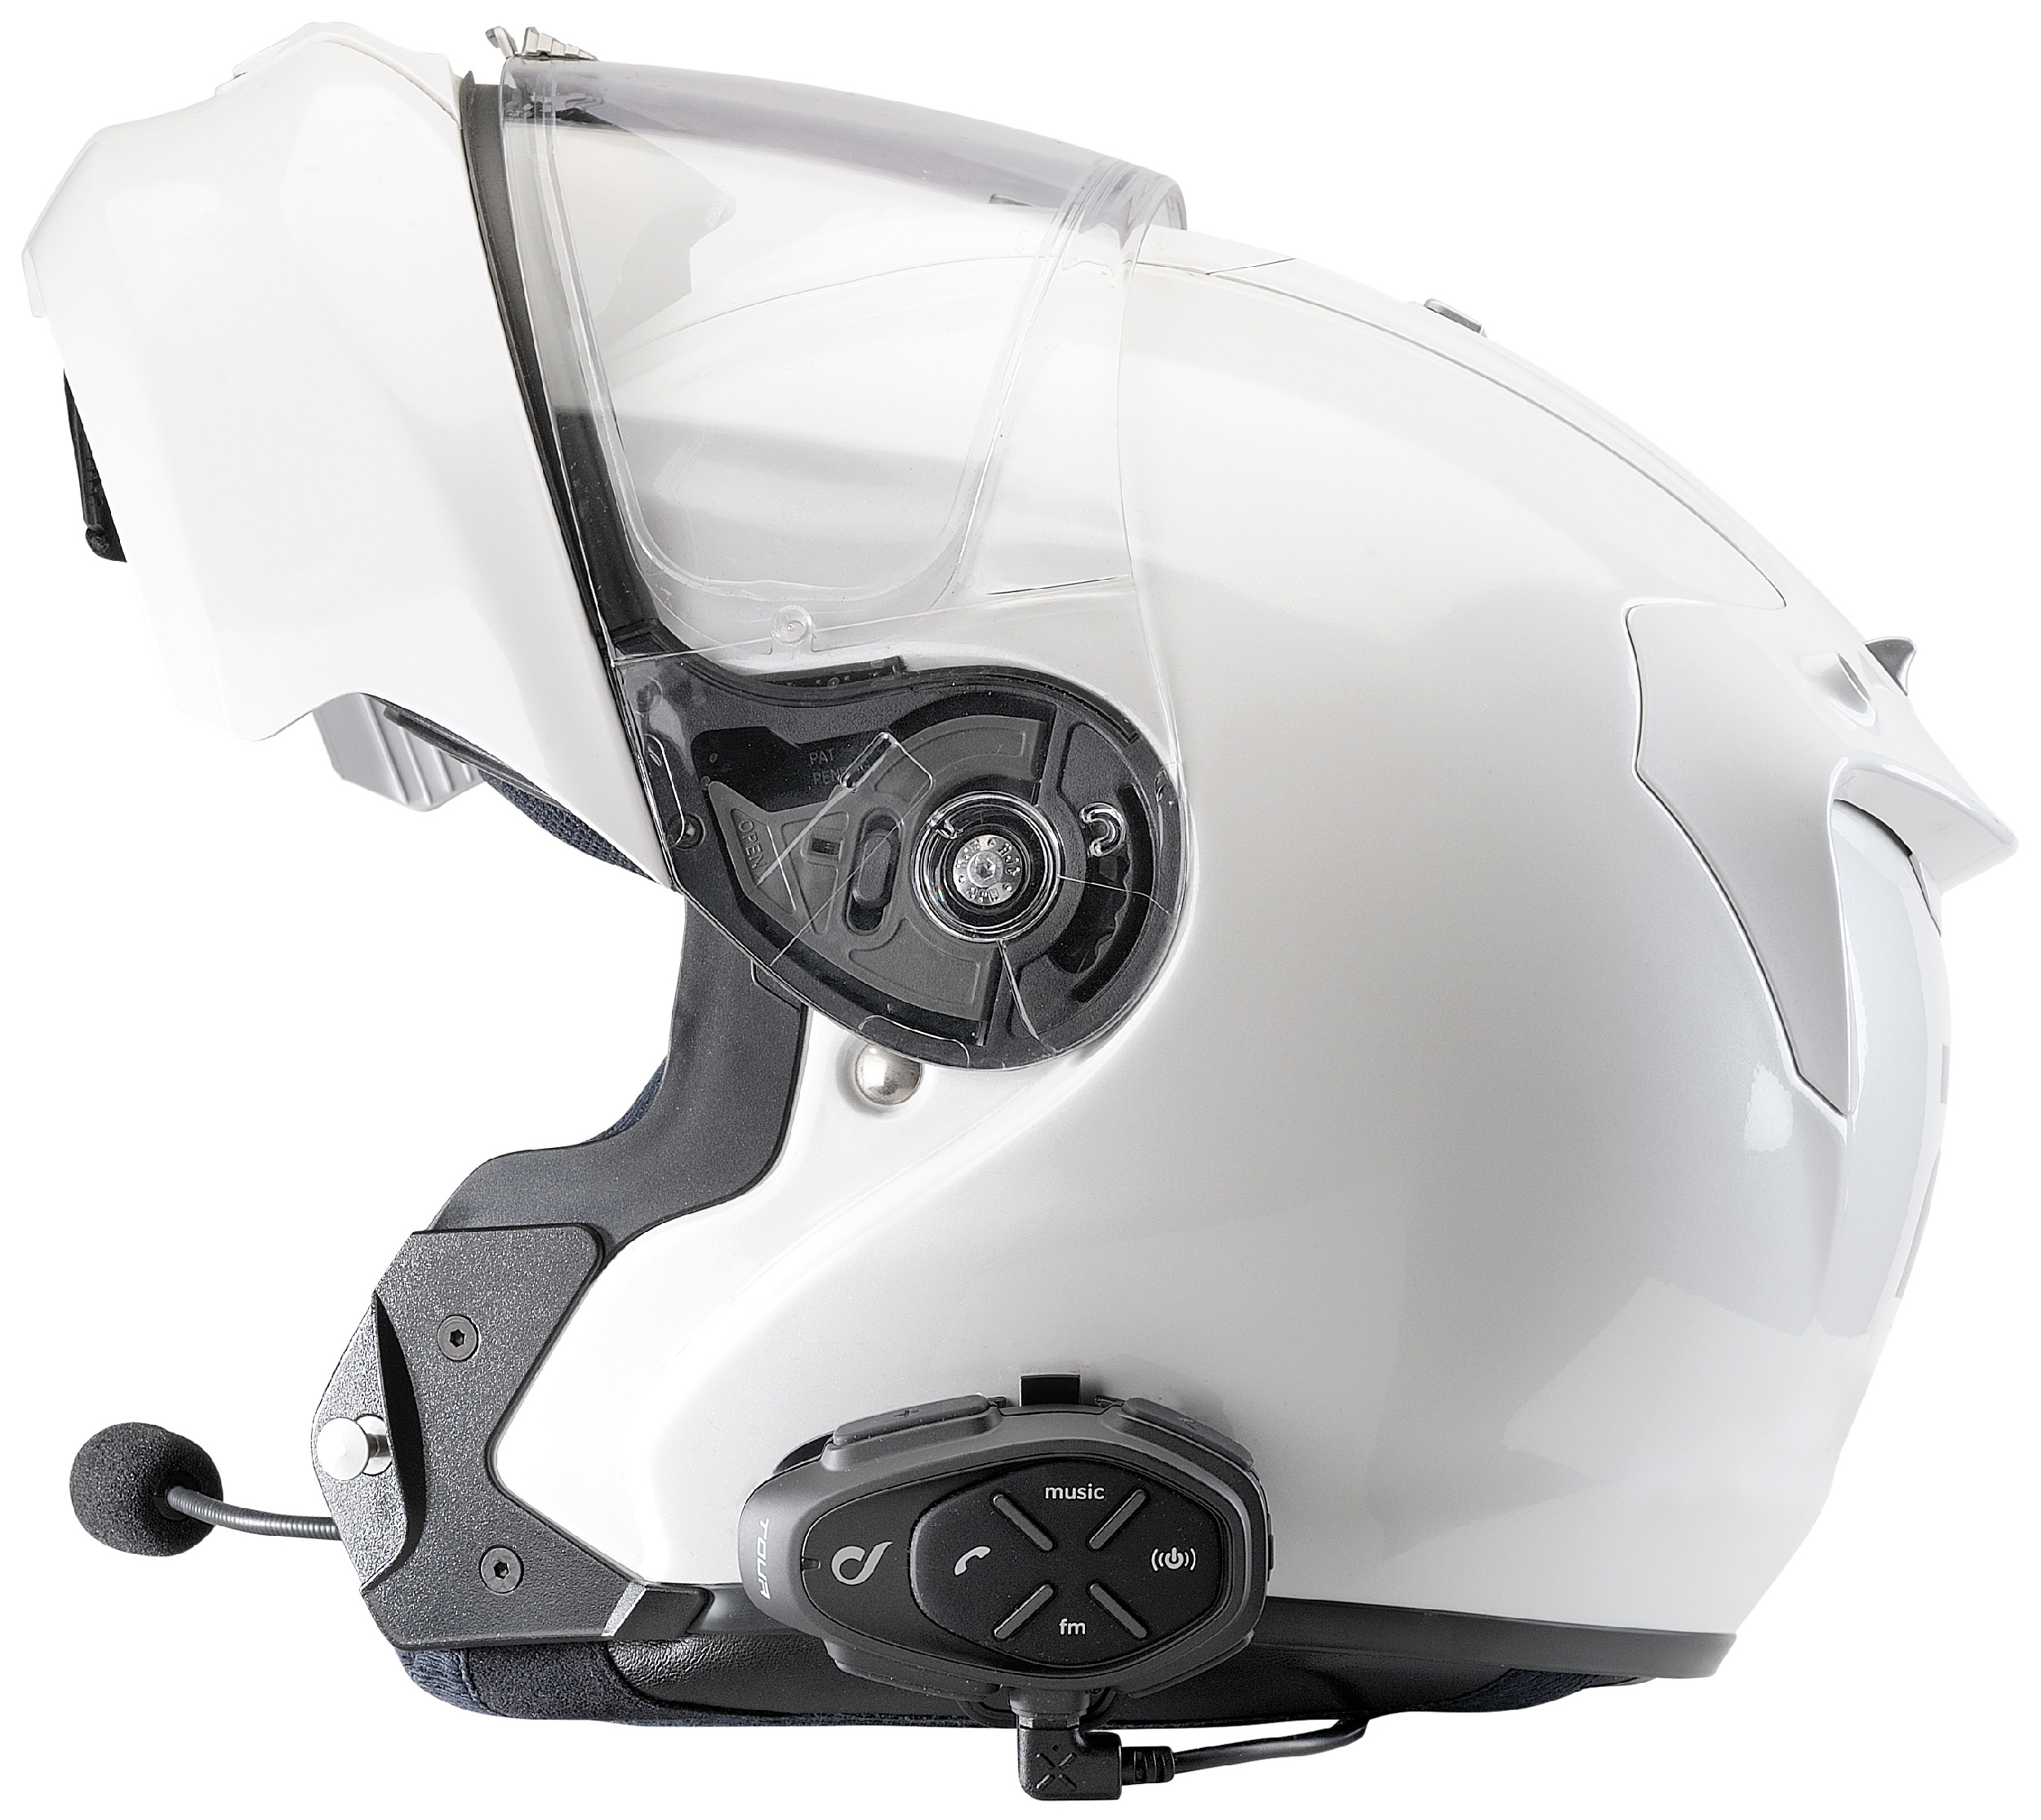 Download Motorcycle Helmet Mockup Set Free - Kawasaki KX 250F Mockup 5-in-1 Pack in Handpicked Sets of ...